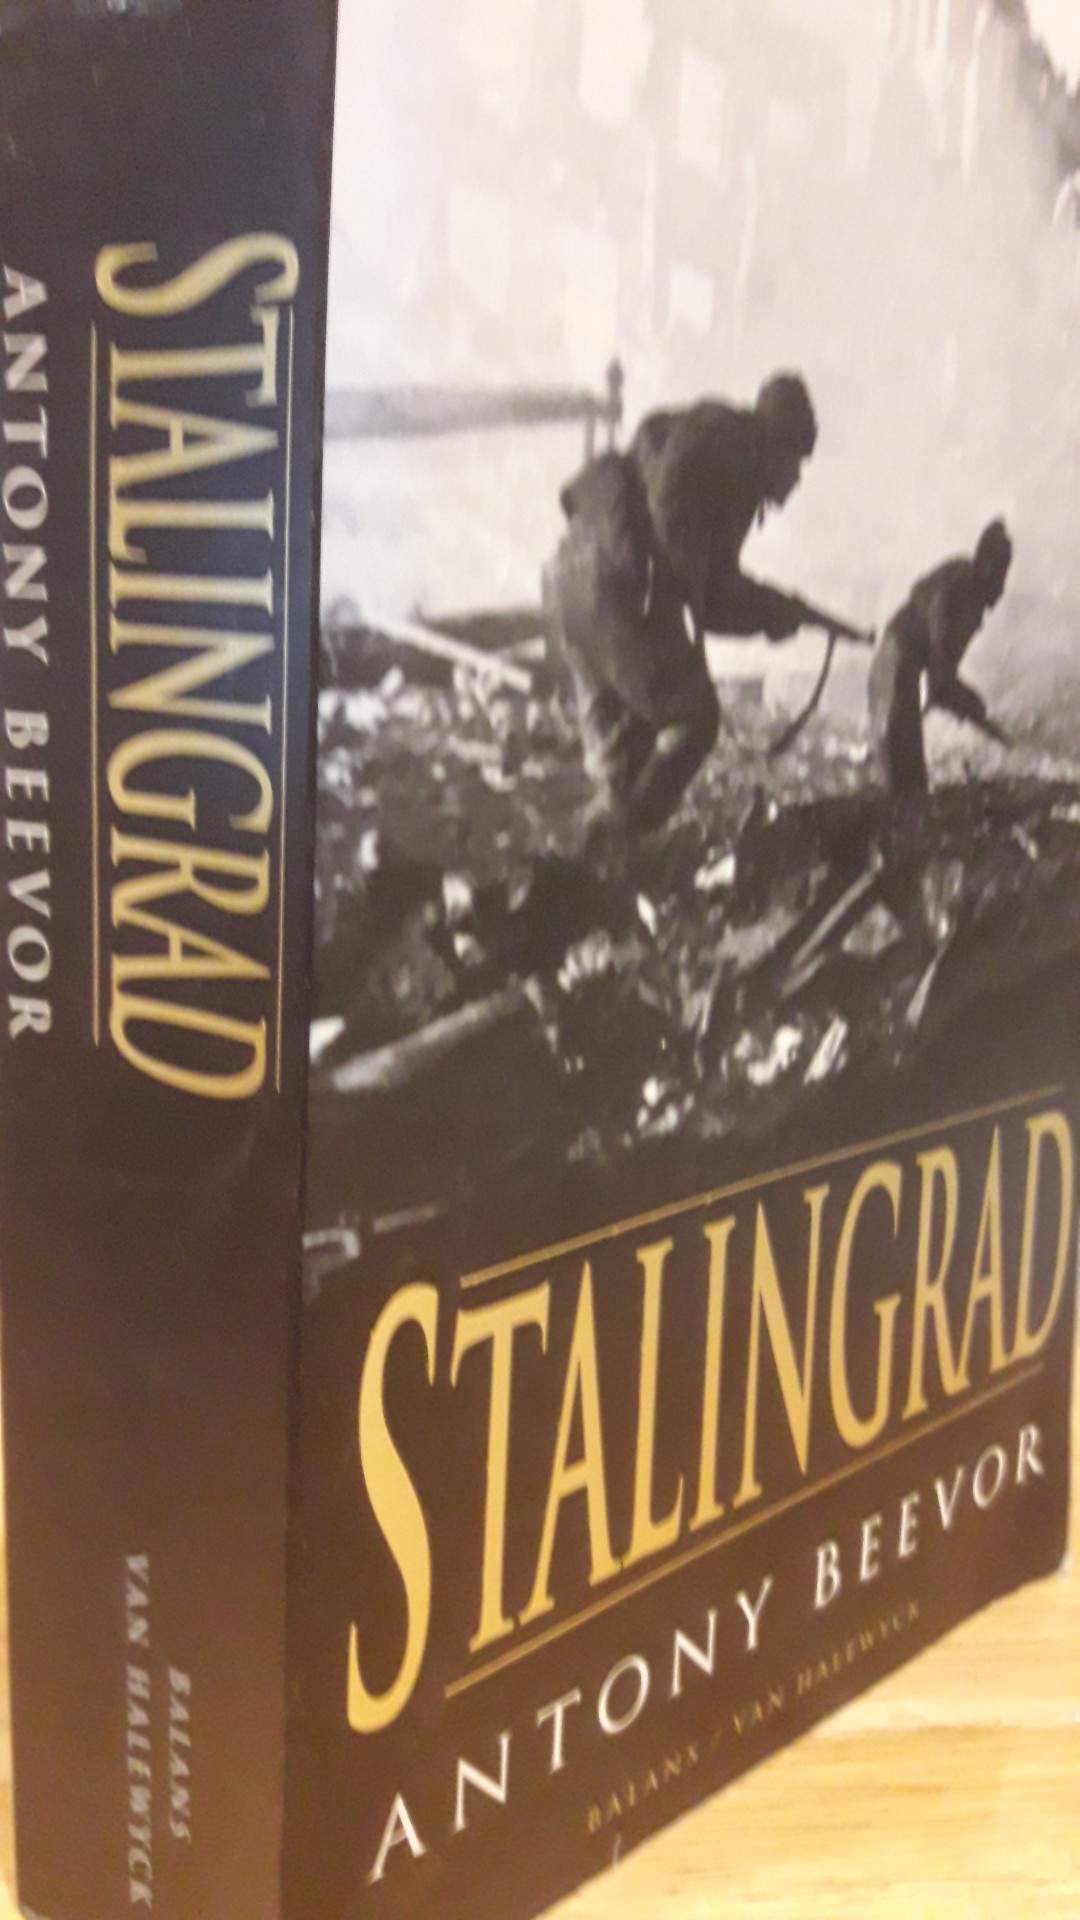 Stalingrad door Antony Beevor / 480 blz